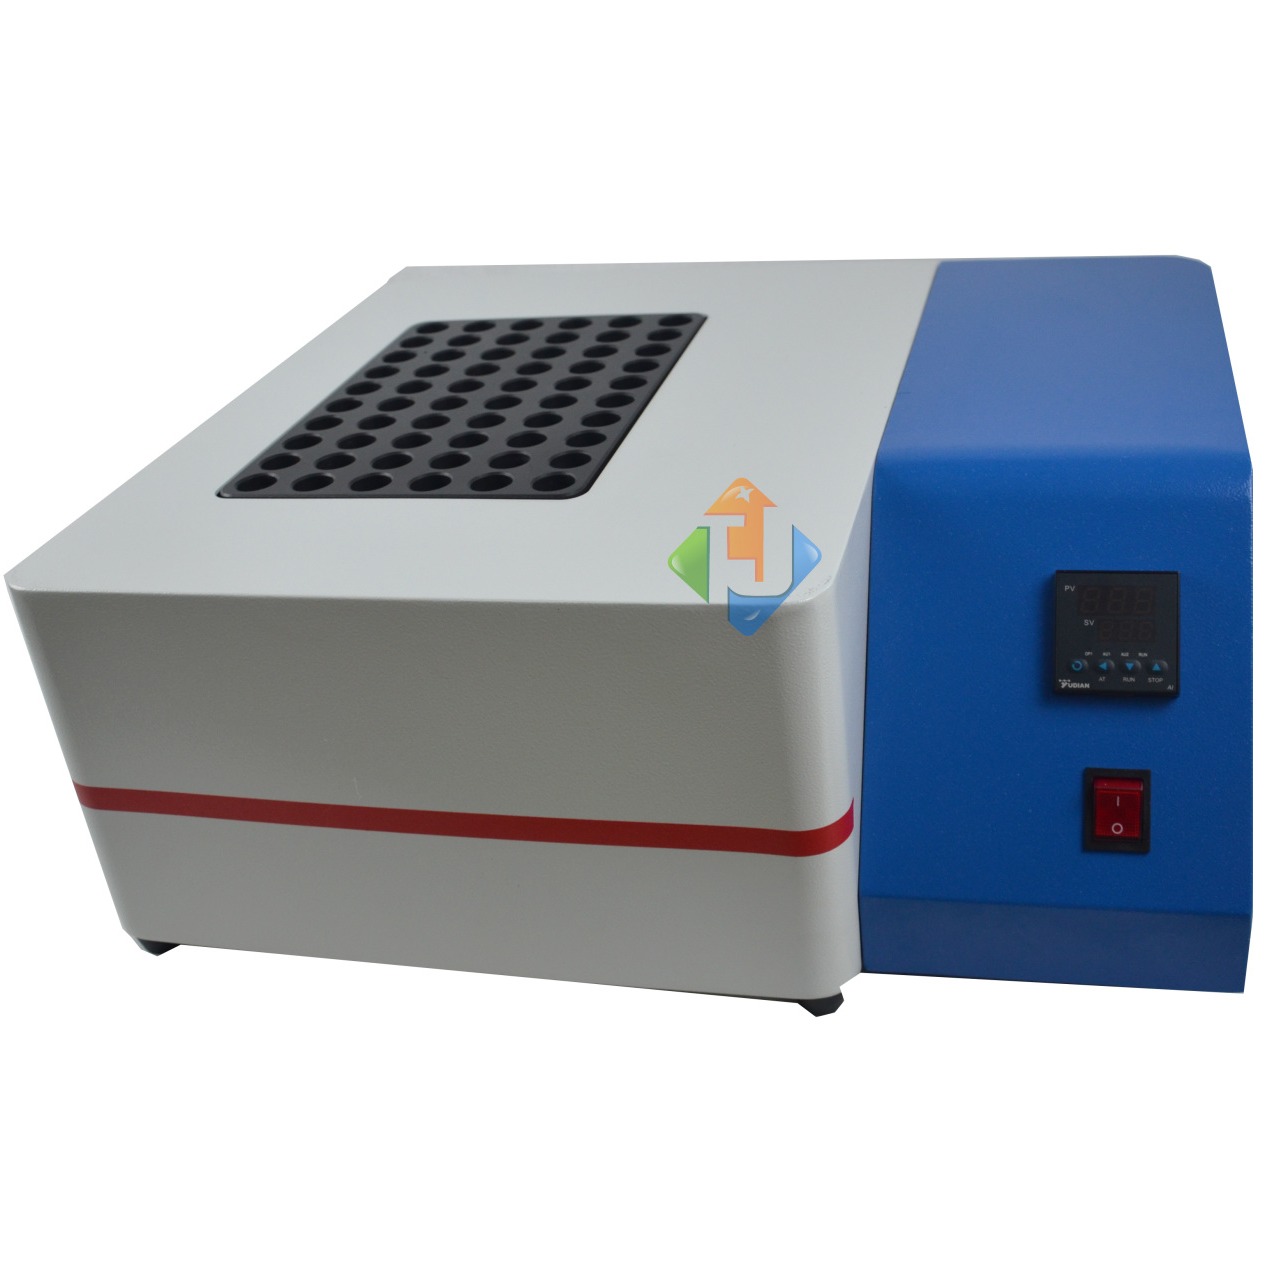 理想选择聚莱系列PID控温技术赶酸器JTSM-60控温精度高